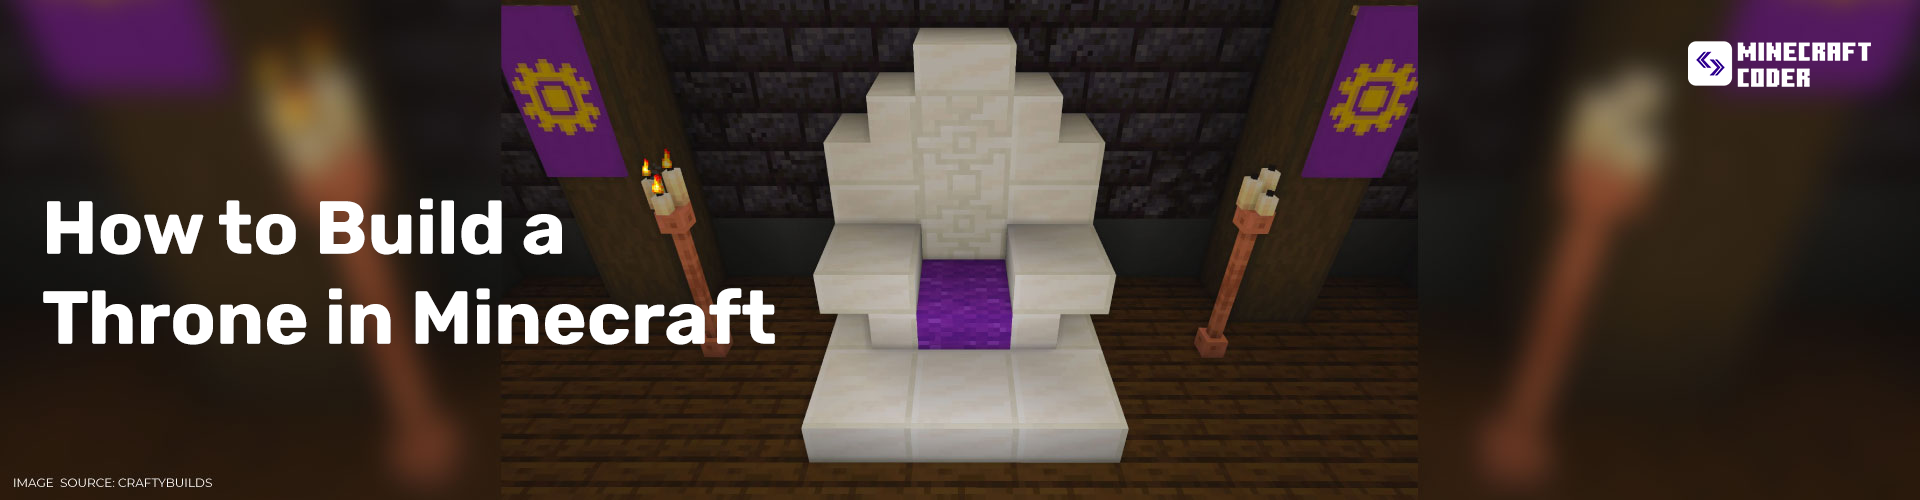 Throne in Minecraft